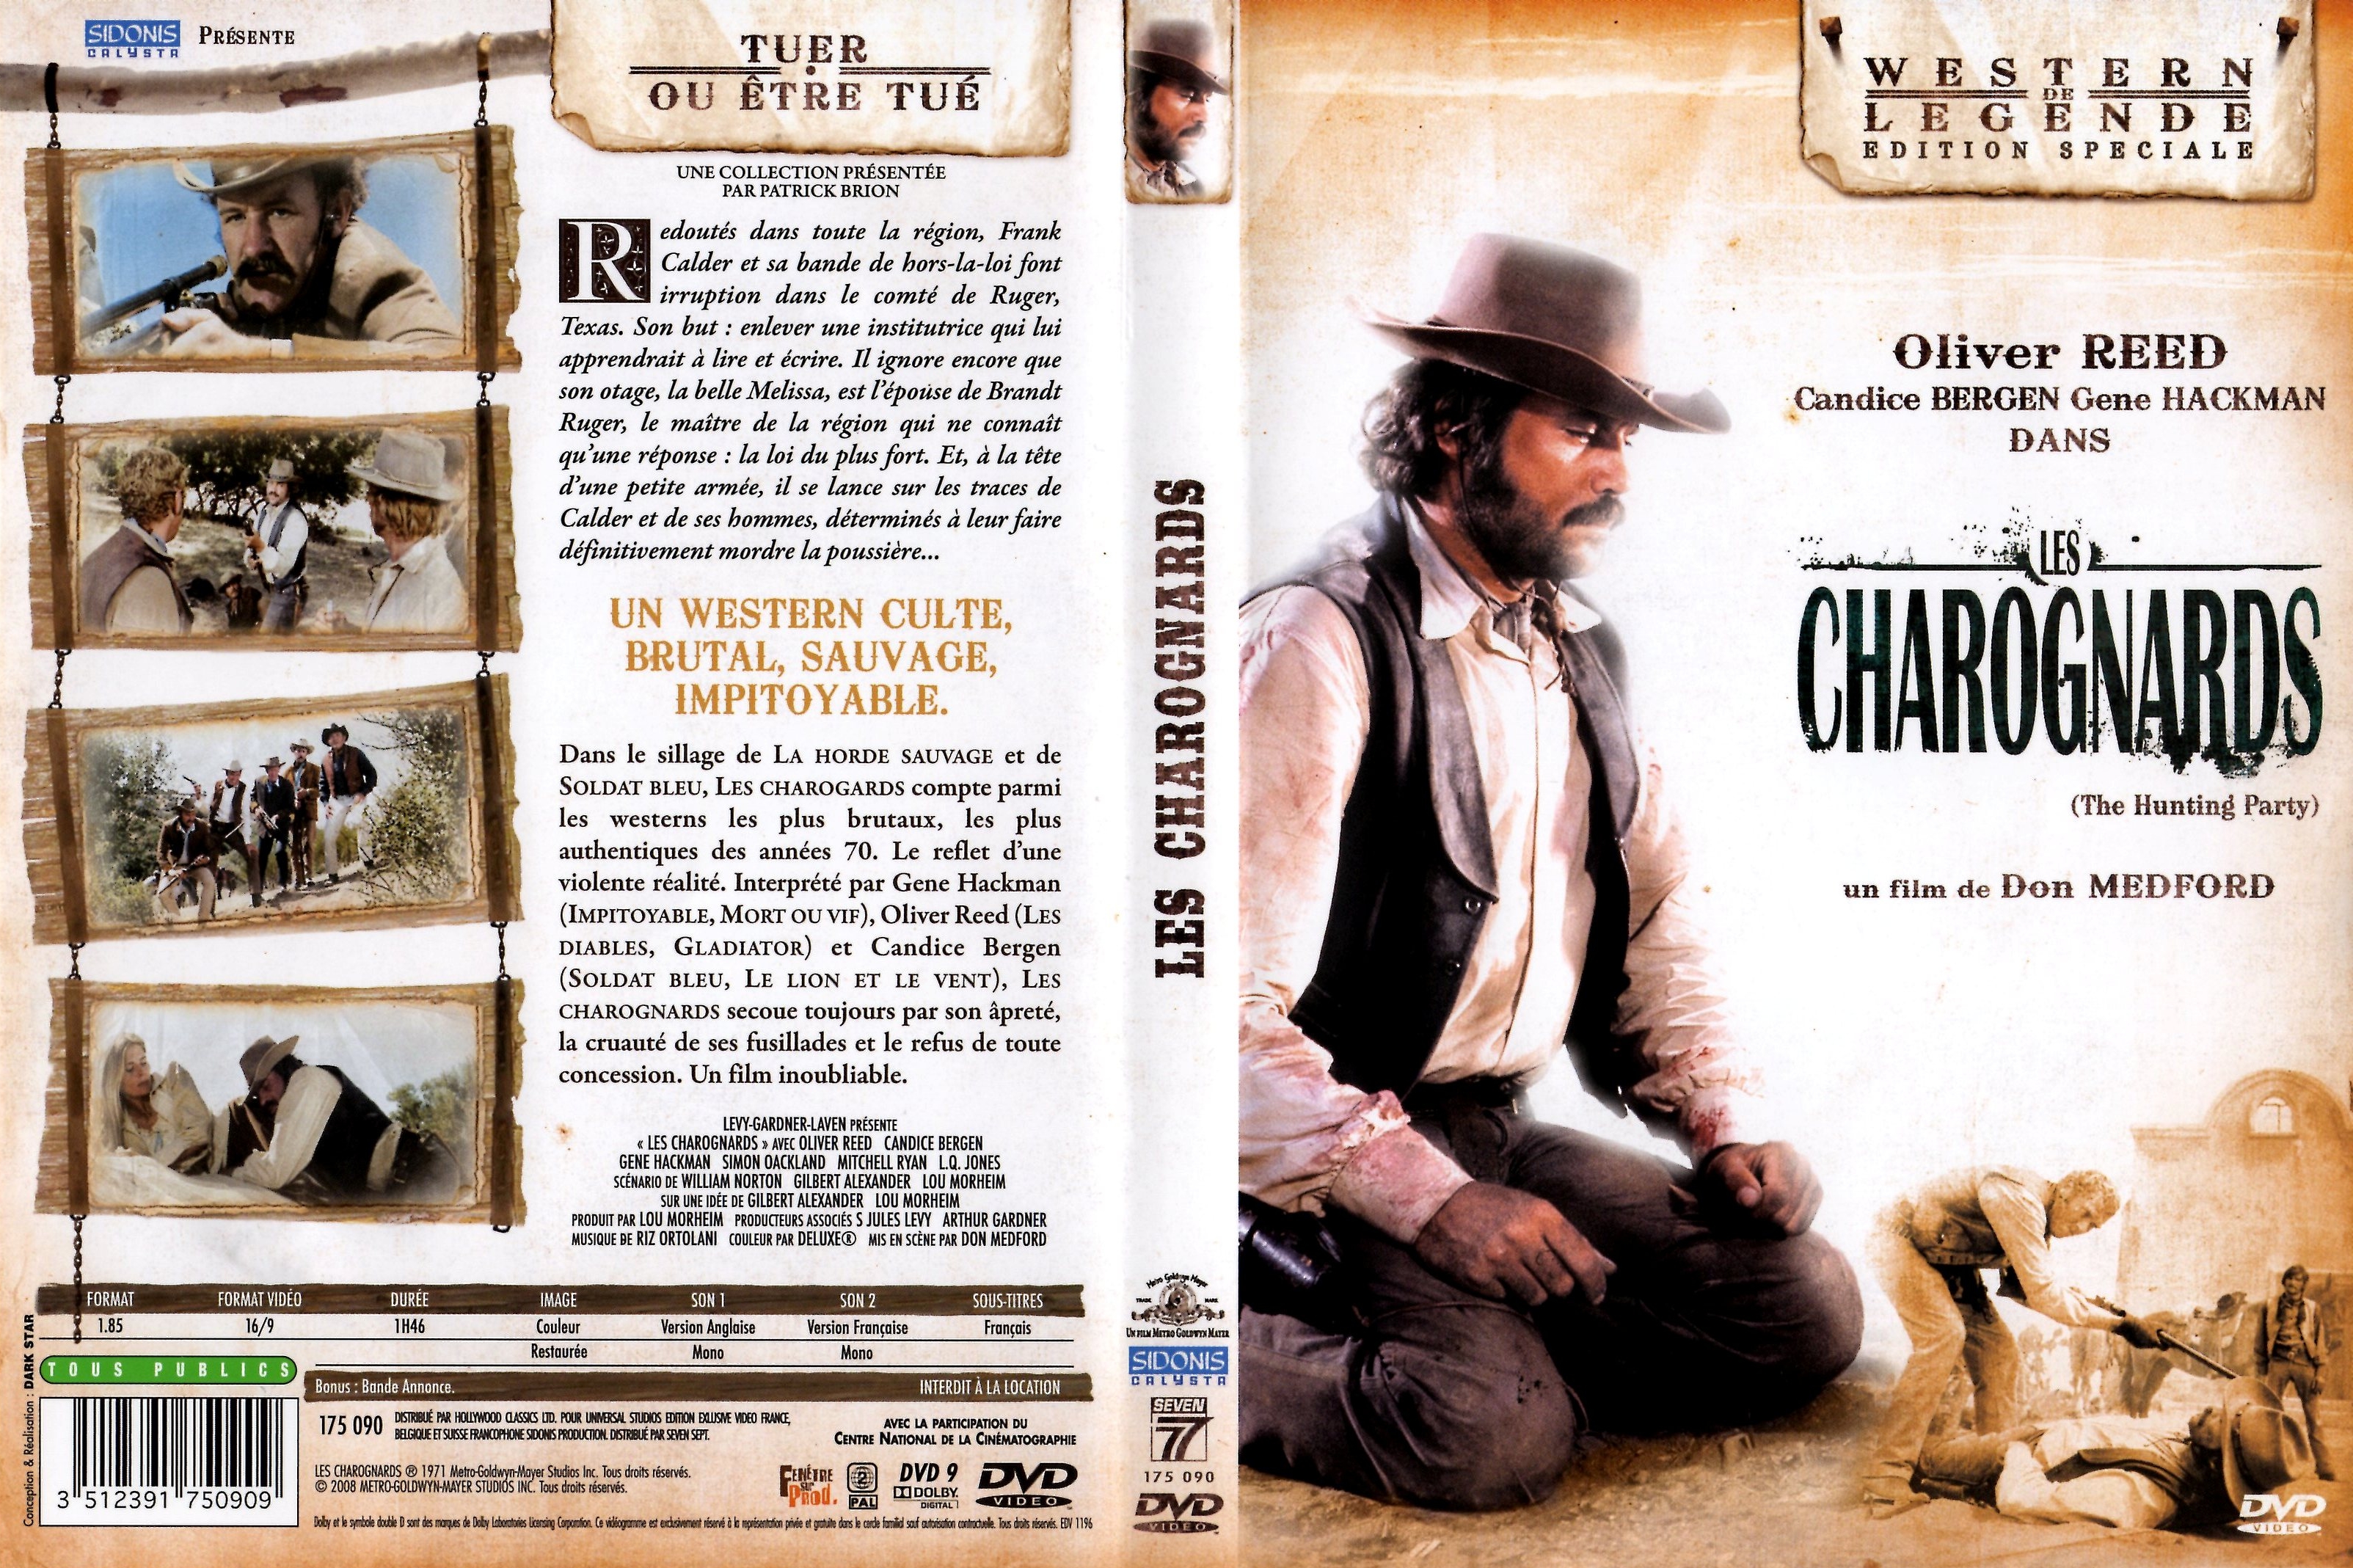 Jaquette DVD Les Charognards v2